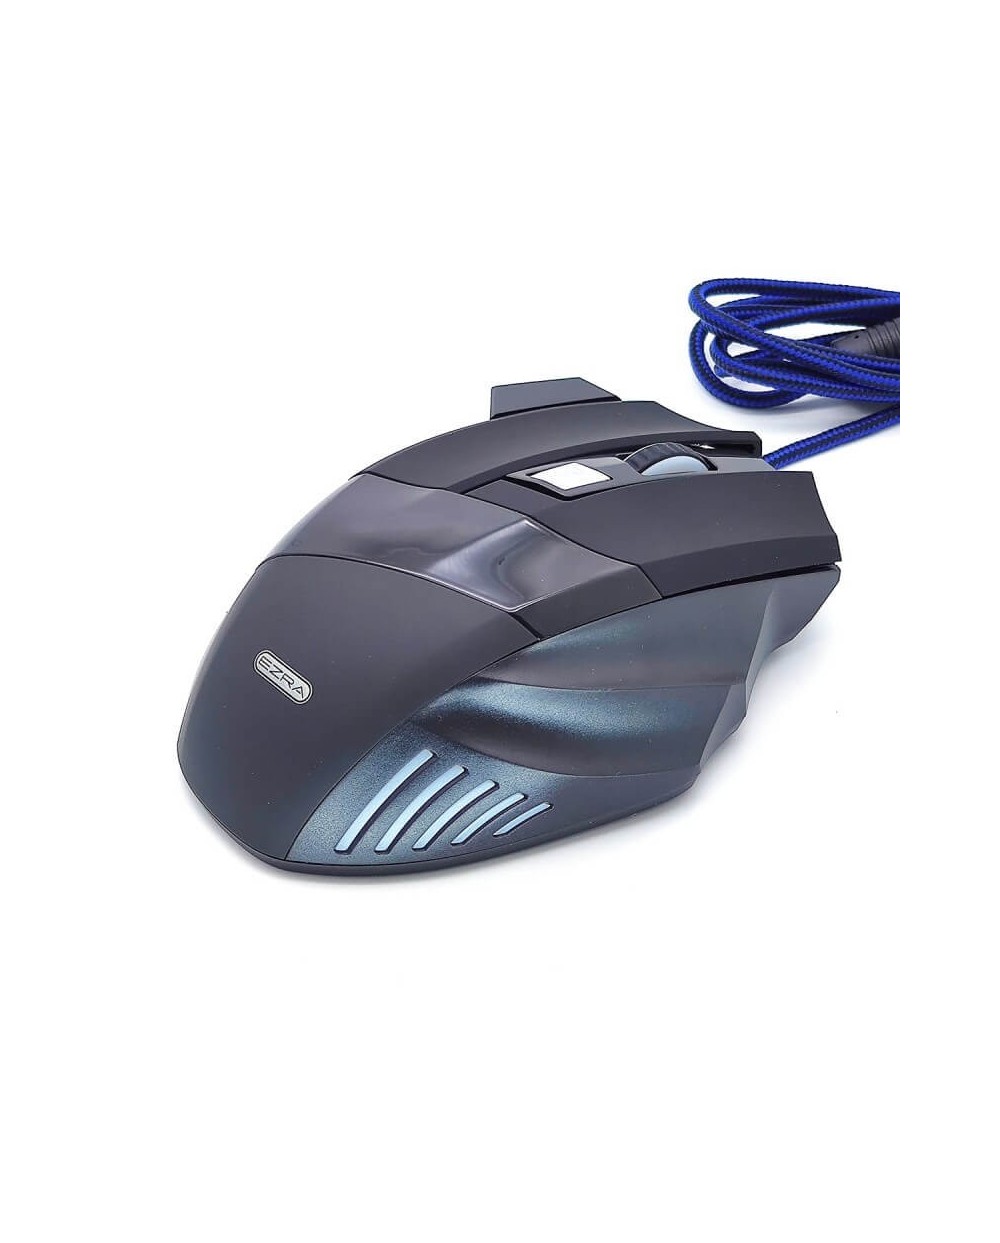 Ενσύρματο Ποντίκι Gaming EZRA AM08 με LED